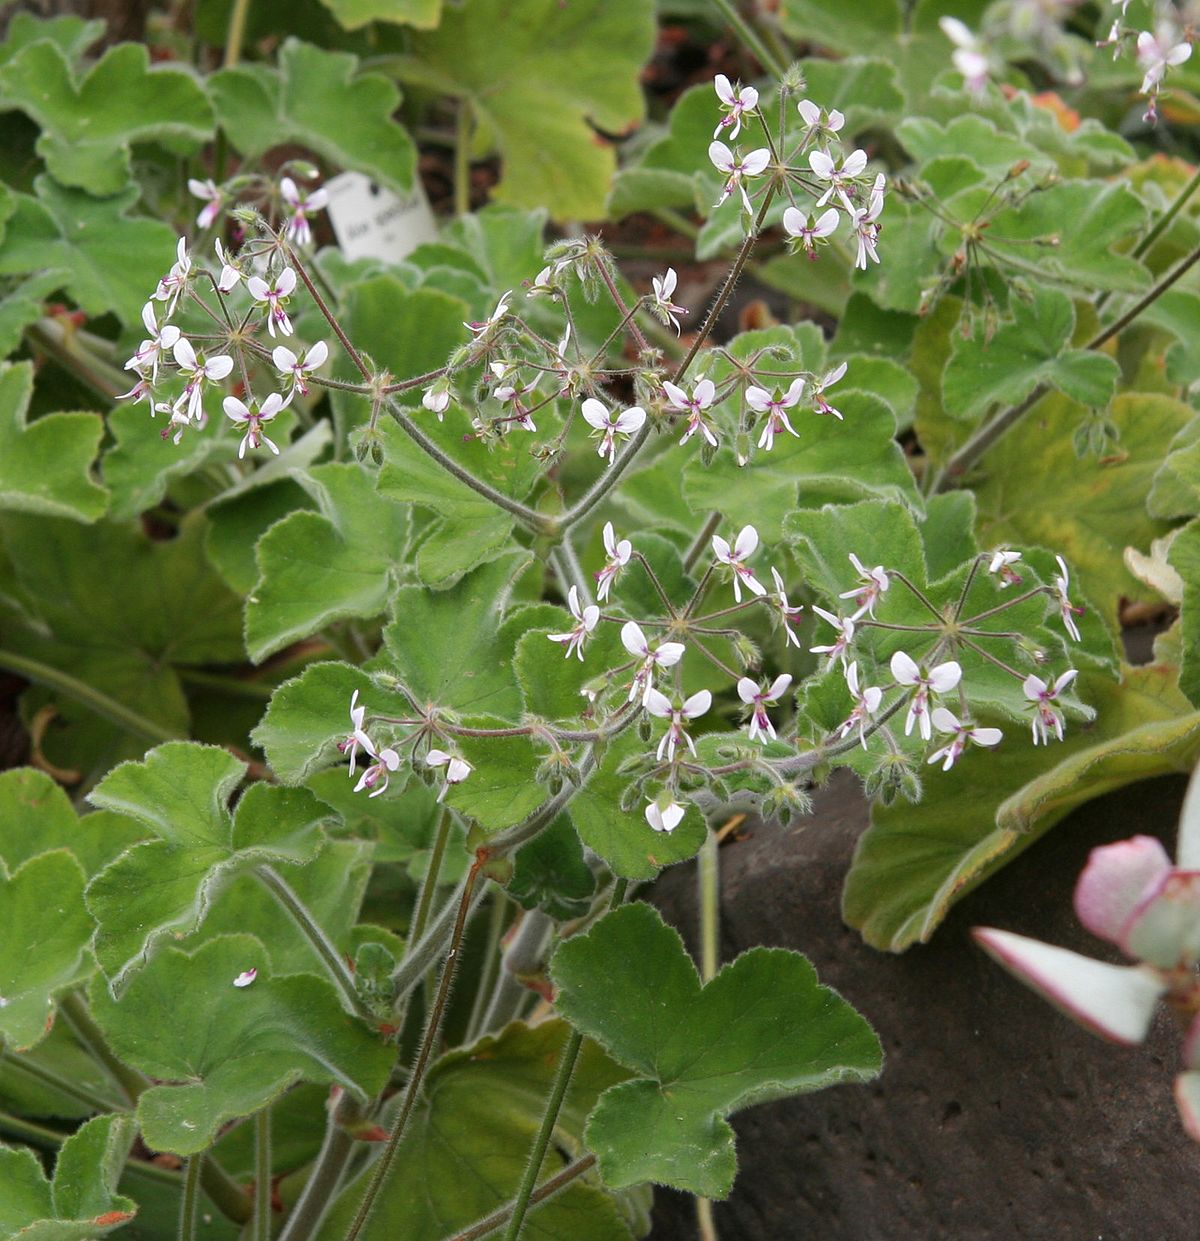 Pelargonium Menthe / Geranium Menthe